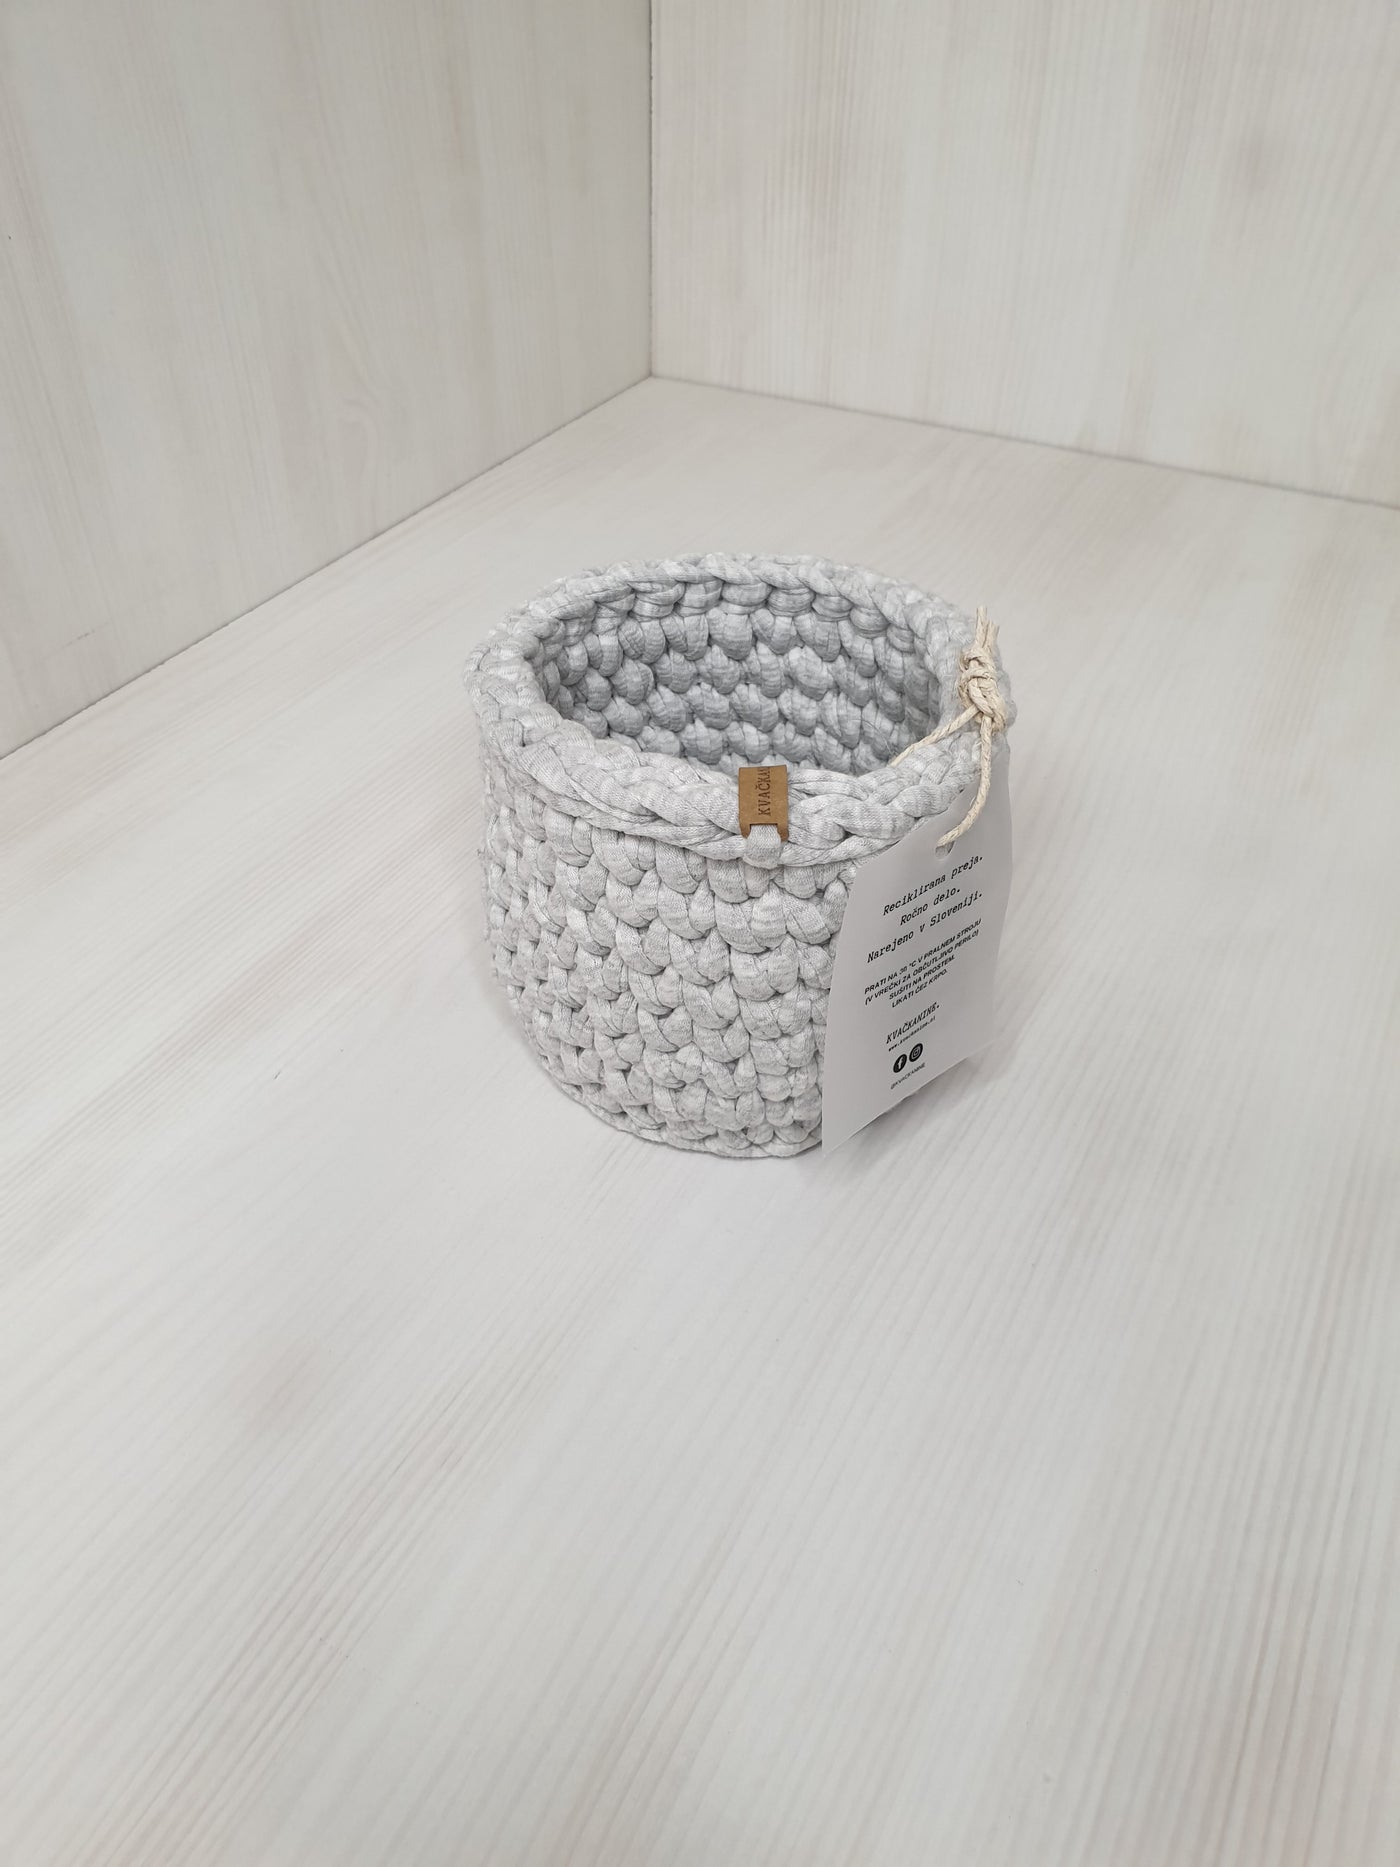 Crochet Basket - Basic